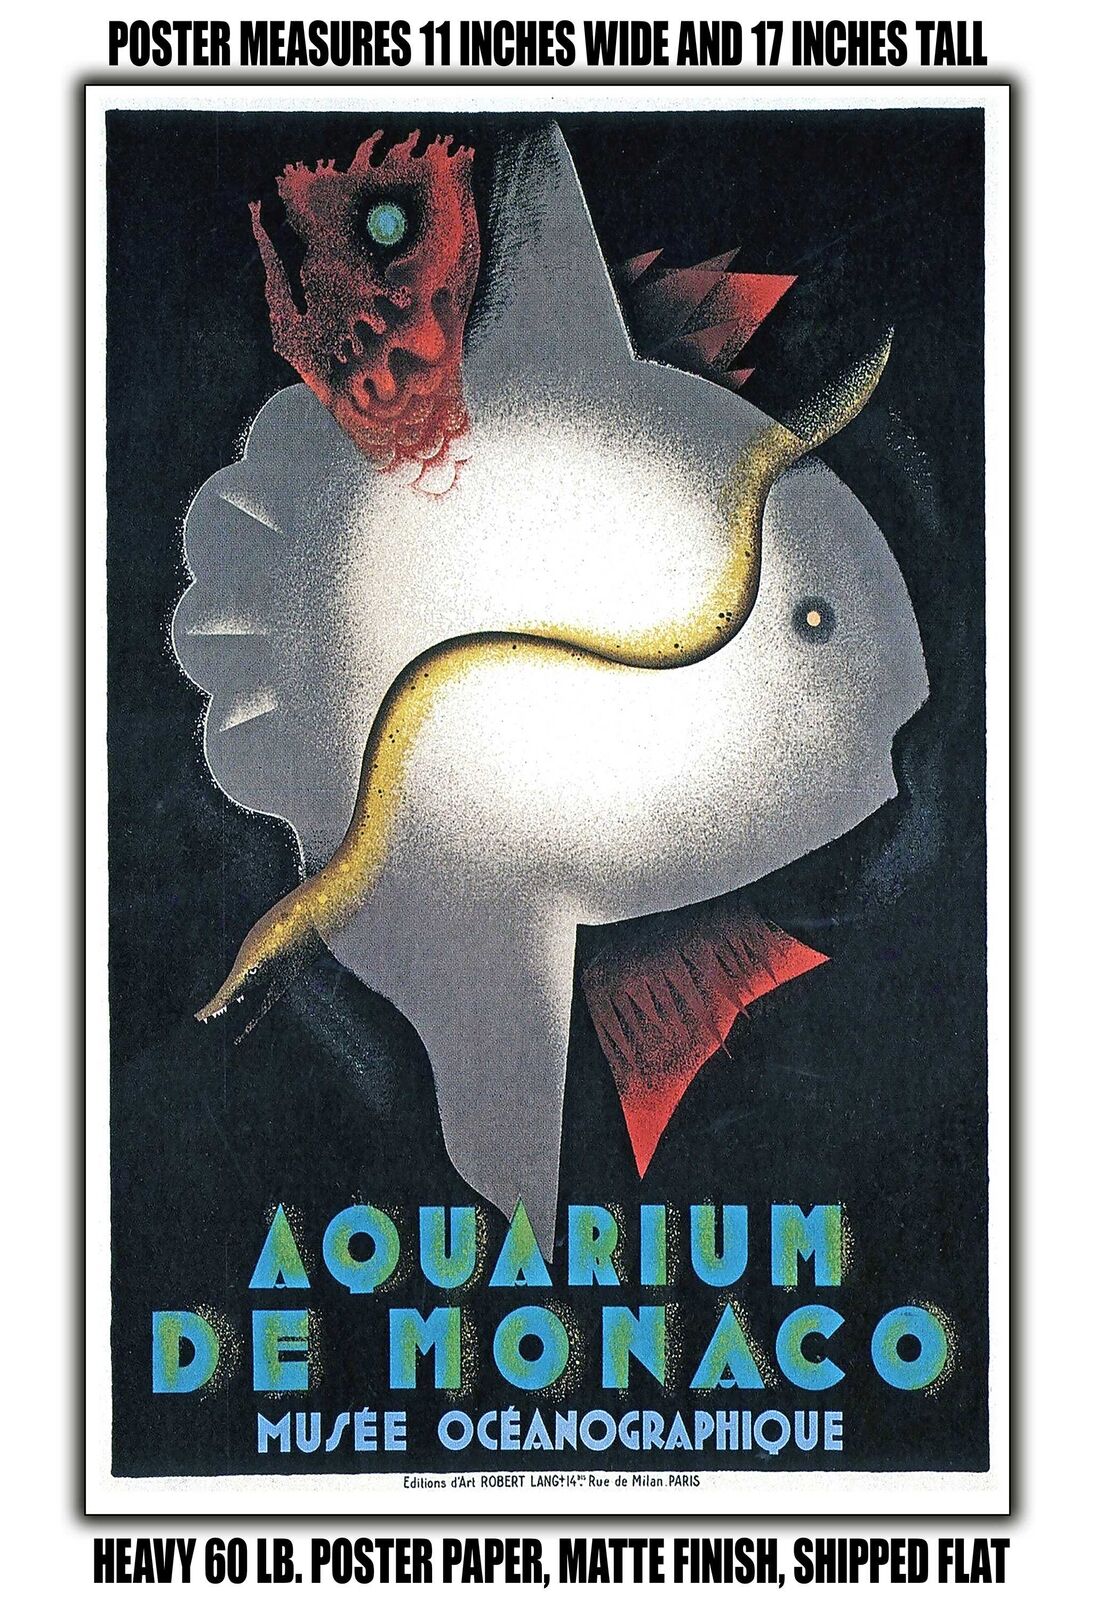 11x17 POSTER - 1926 Monaco Aquarium Oceanographic Museum by Jean Carlu